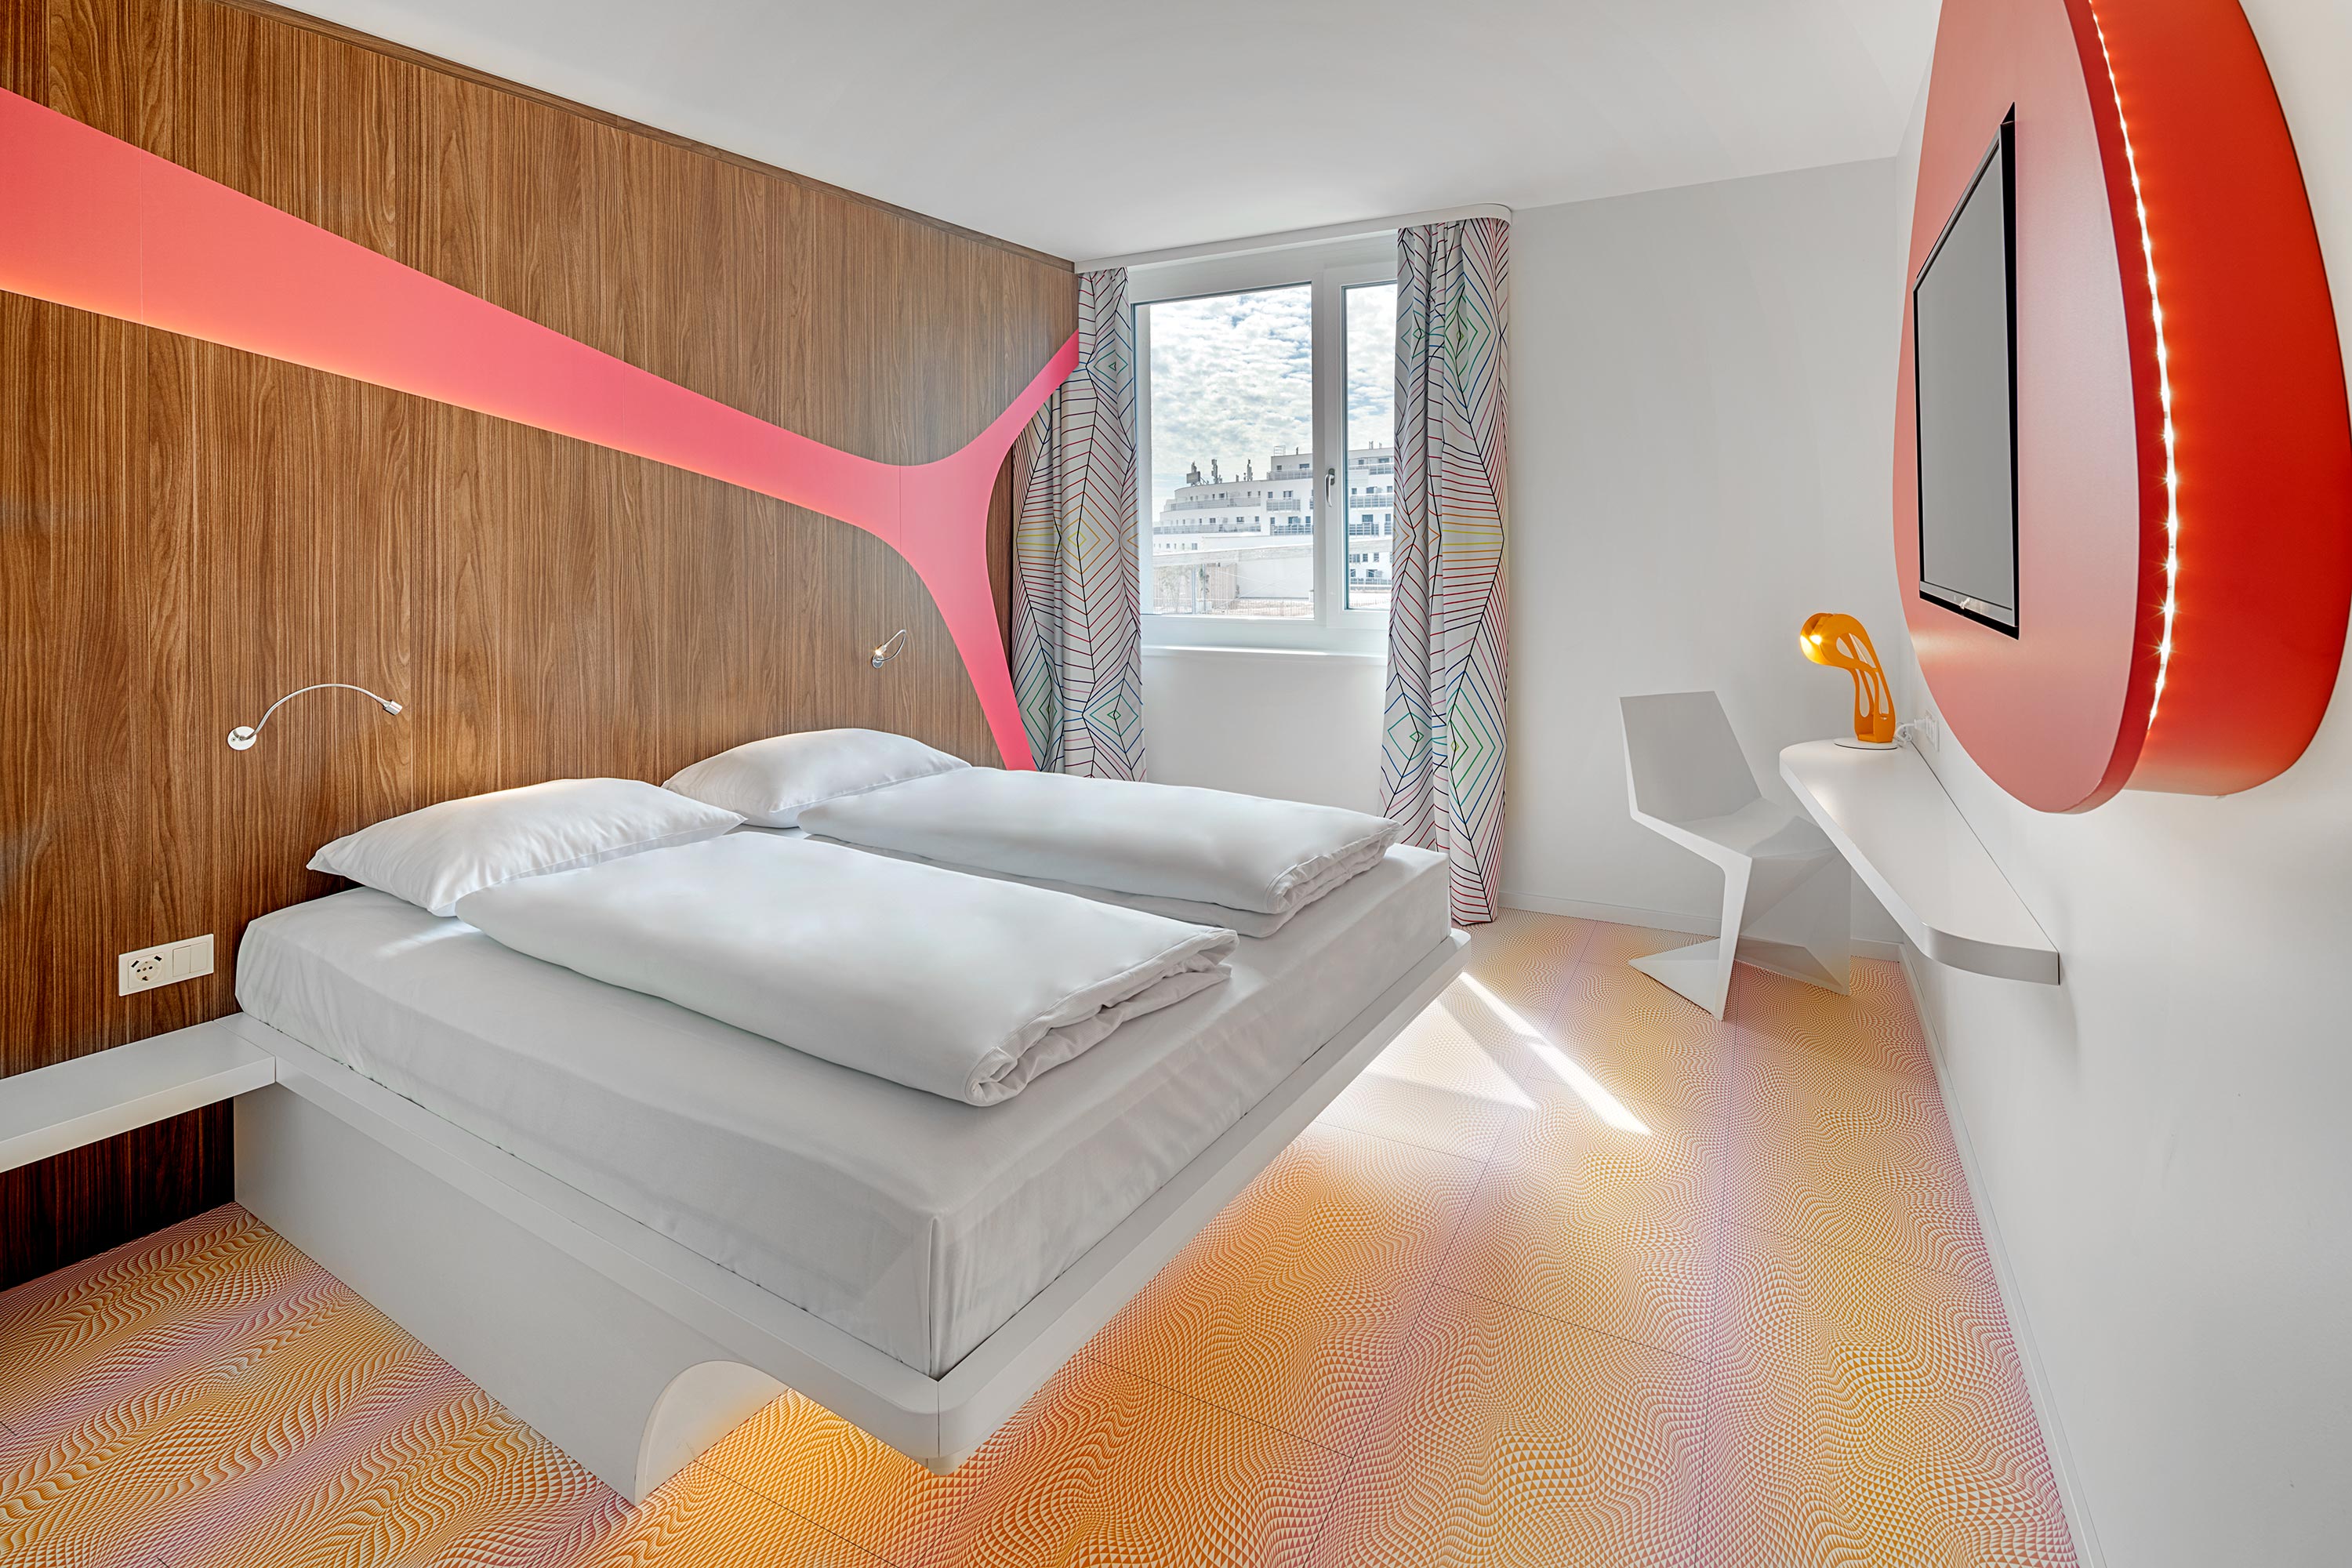 Ein Doppelbett in einem Hotelzimmer in Münster mit schönen Vorhängen und einem roten Spiegel